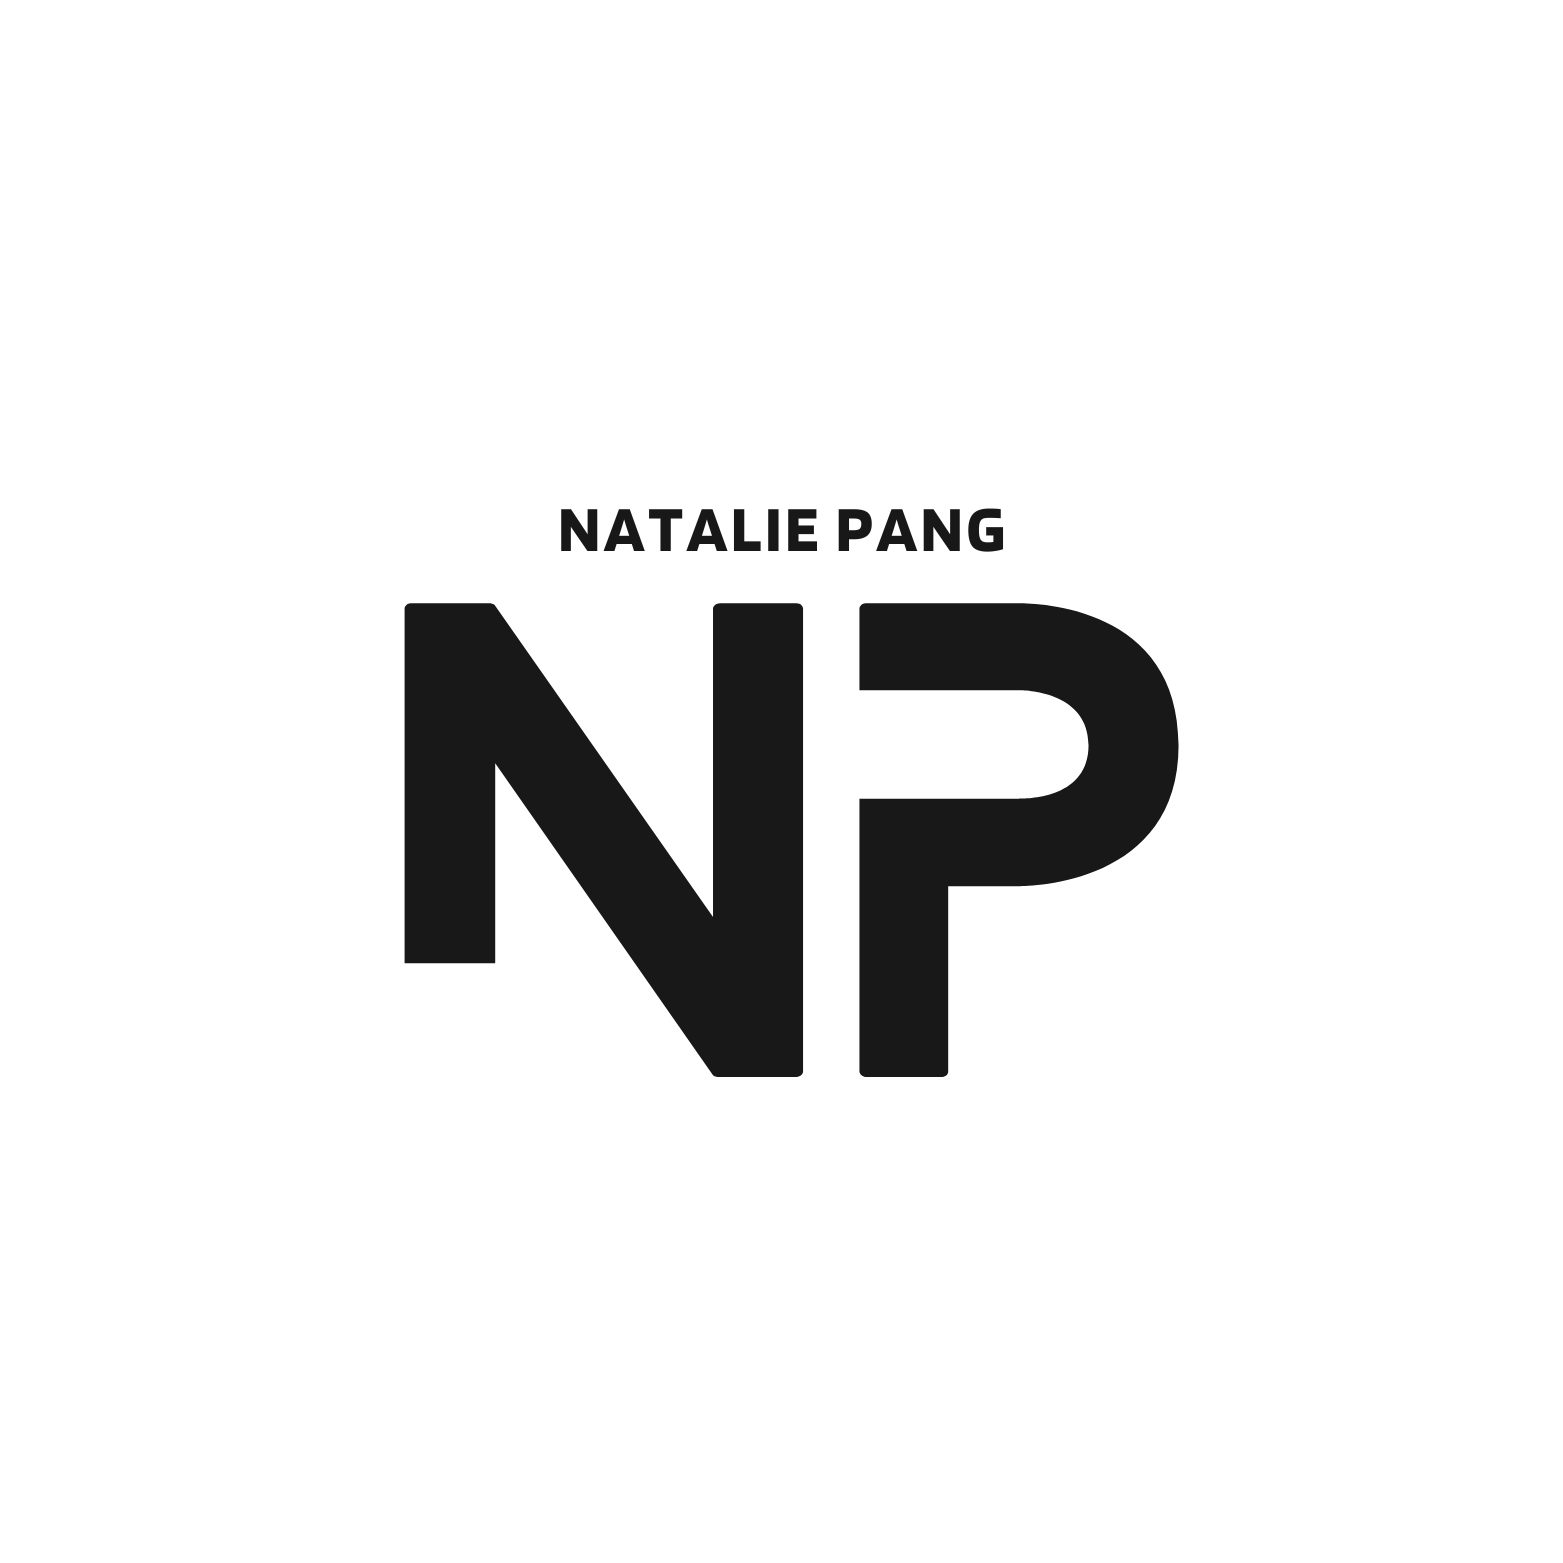 Natalie Pang